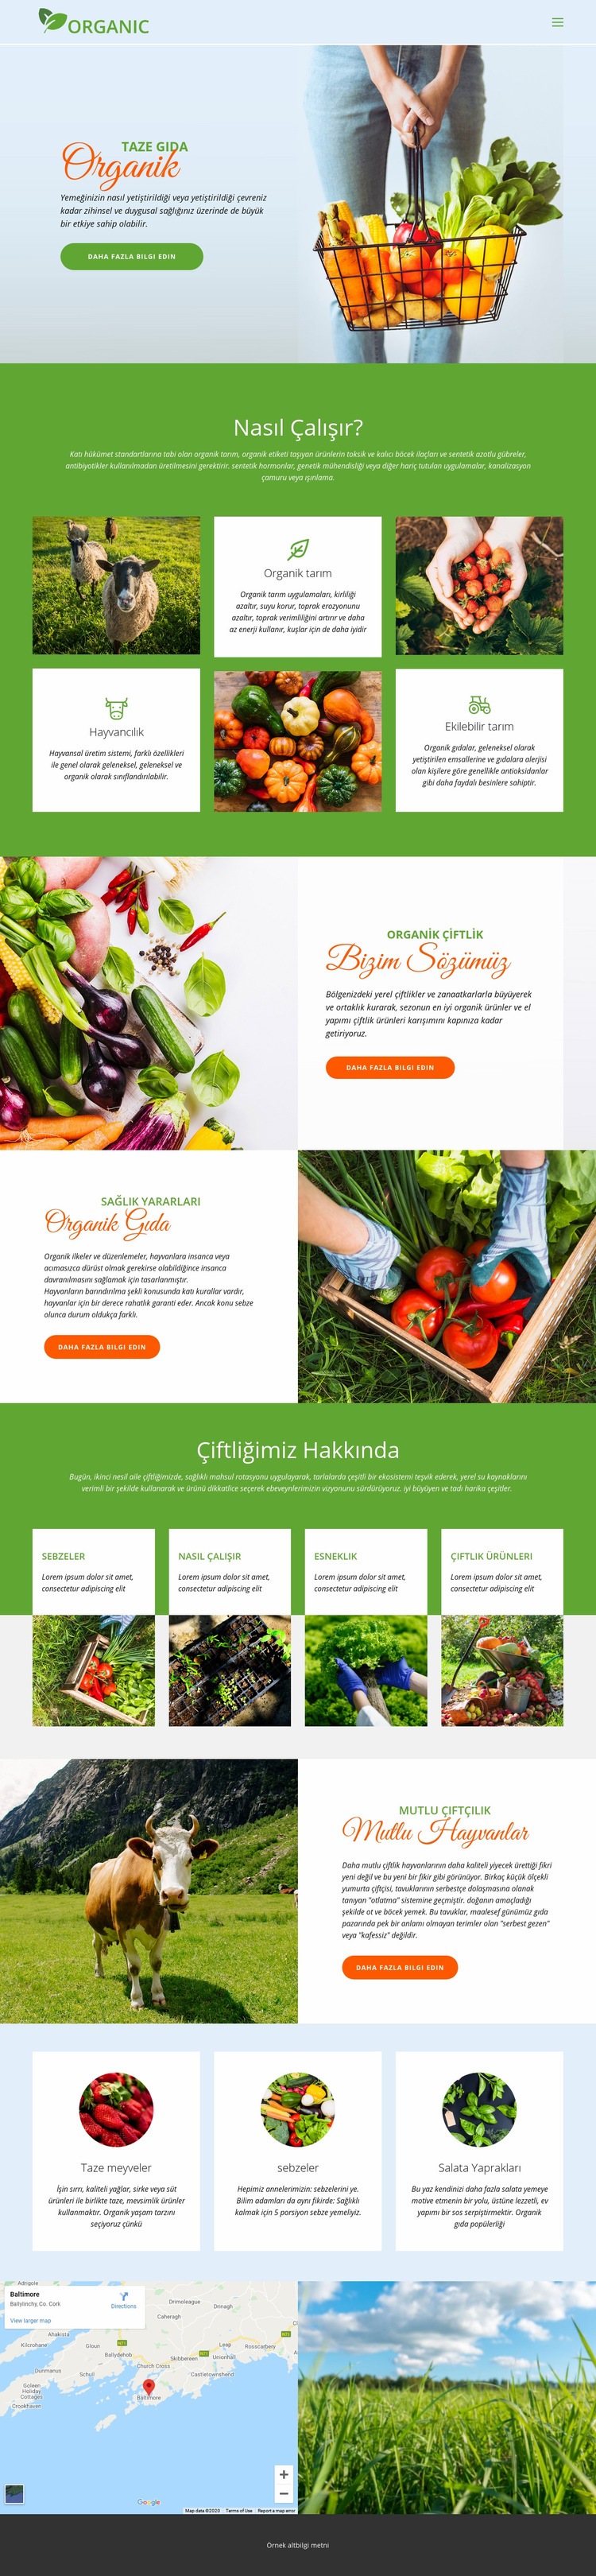 En iyi organik yiyecekleri yiyin Açılış sayfası